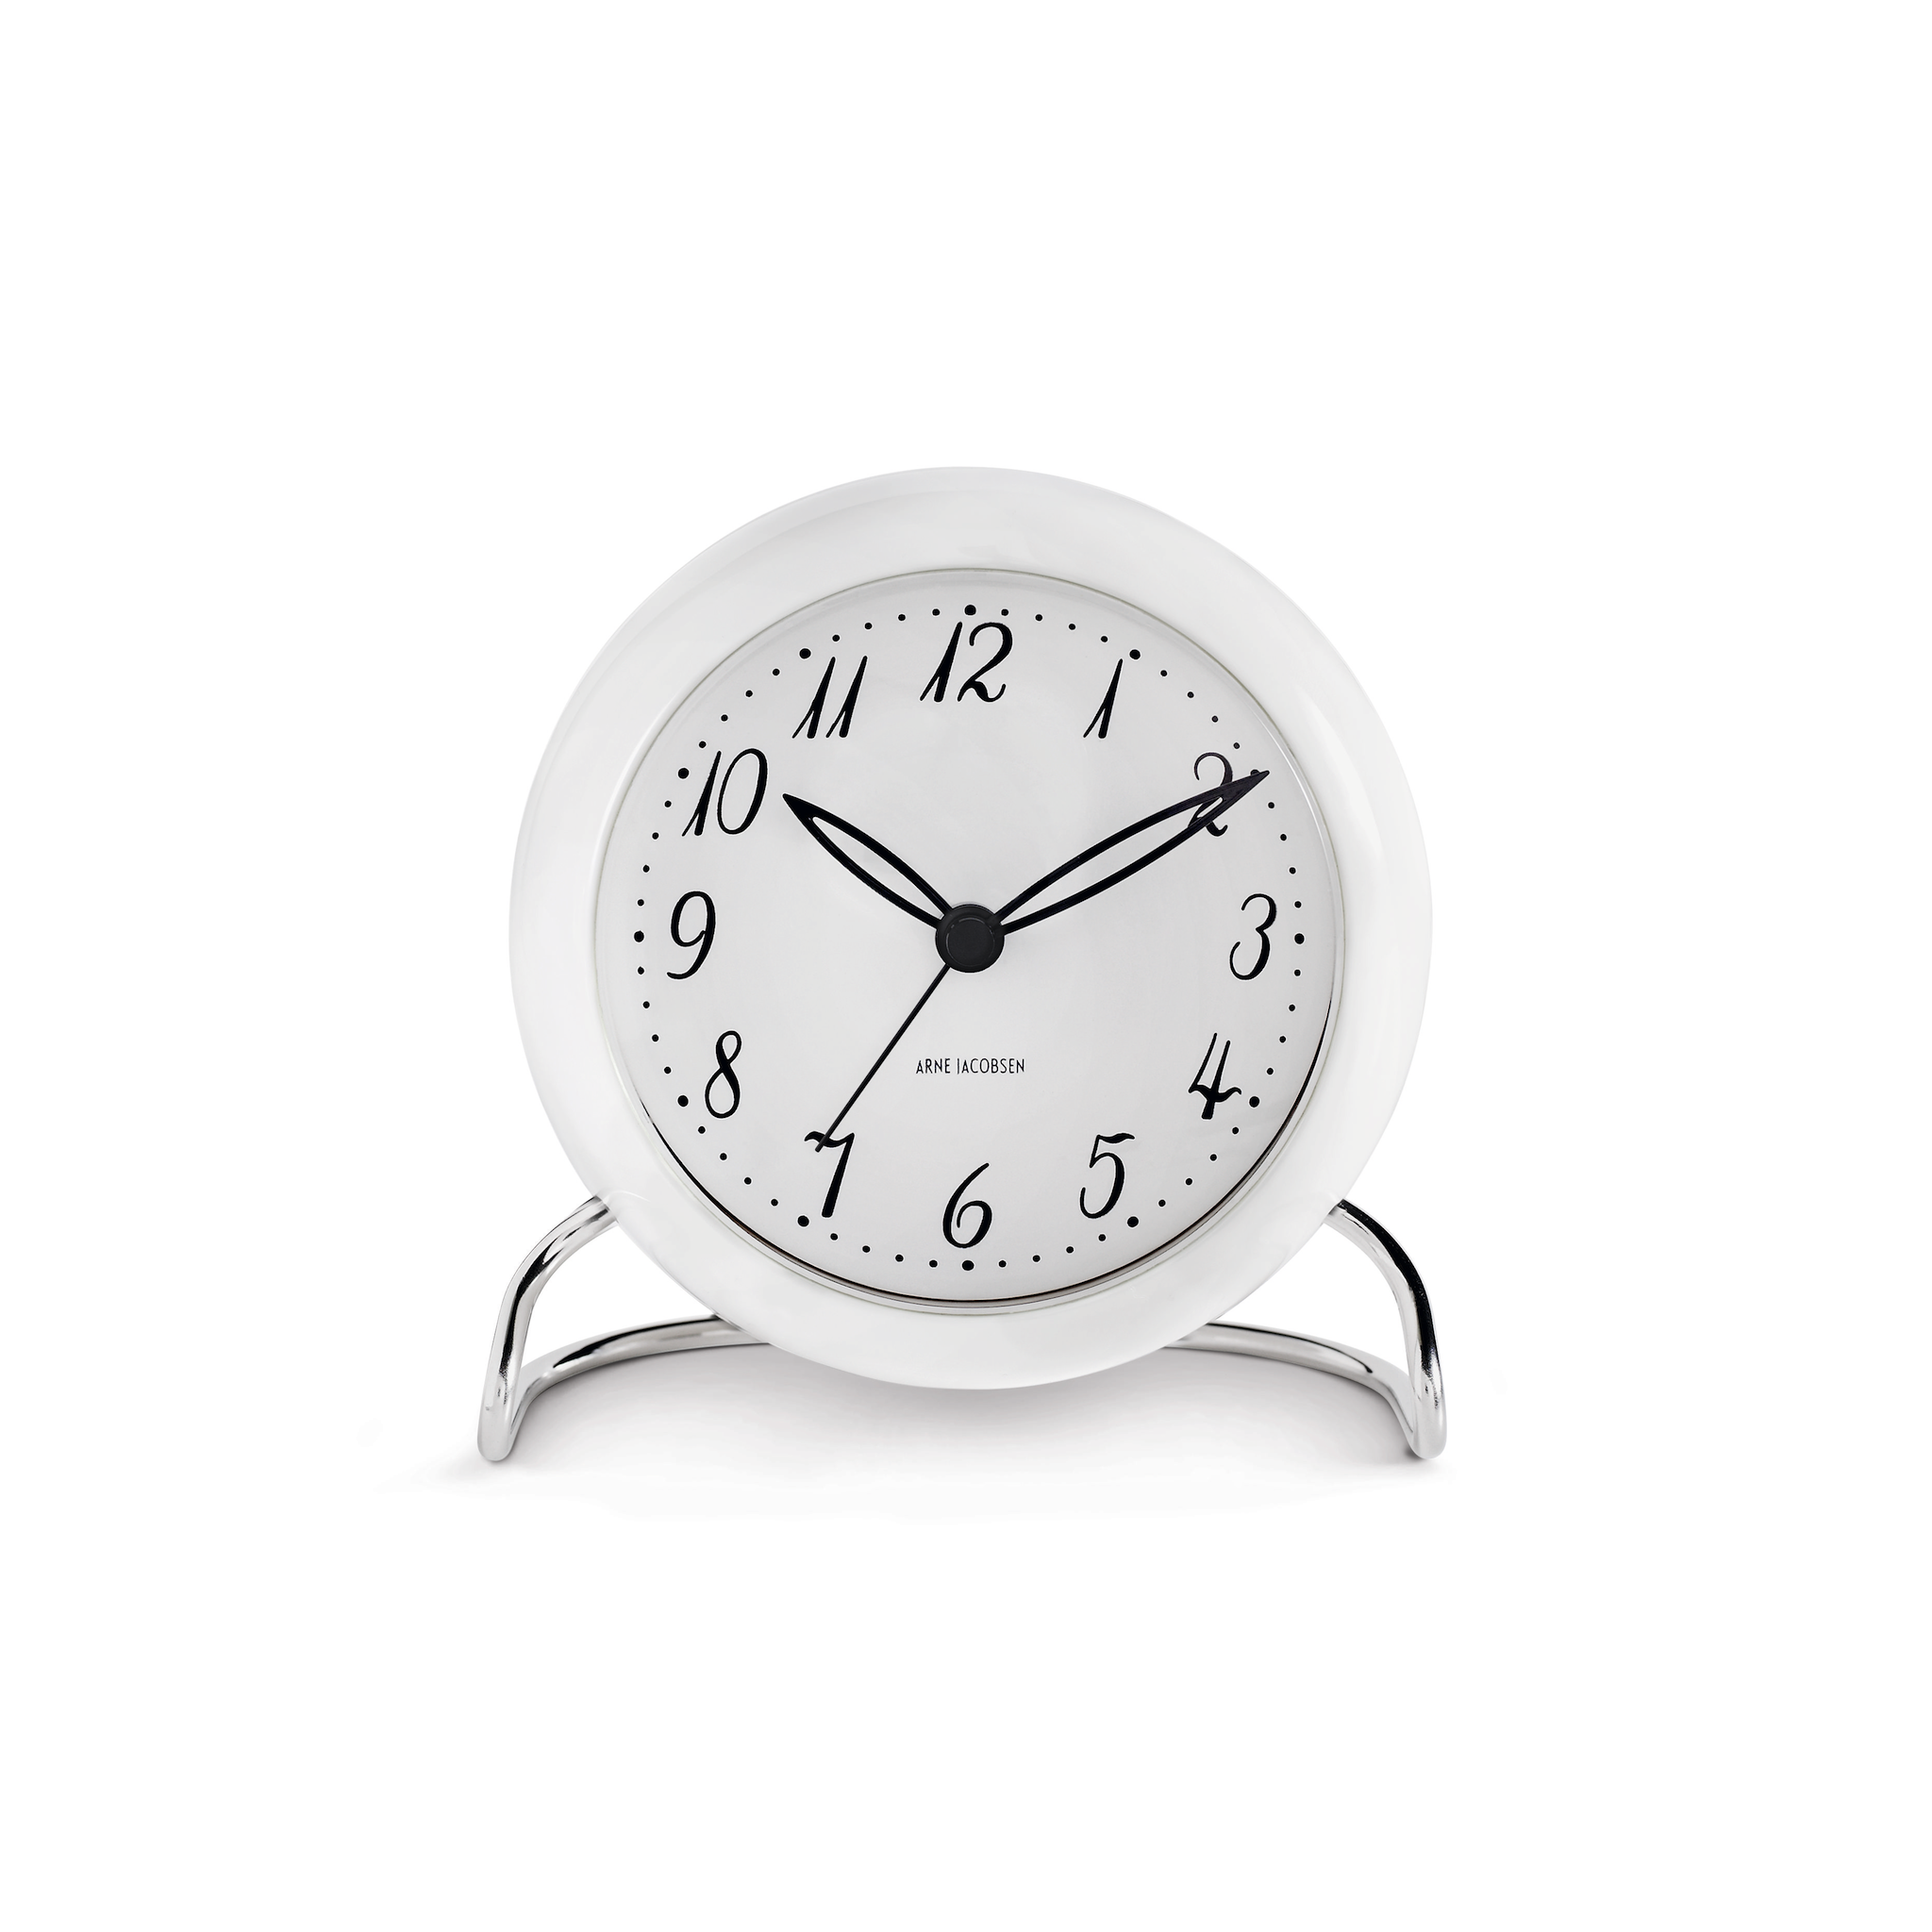 Arne Jacobsen LK Alarm Clock 11 cm